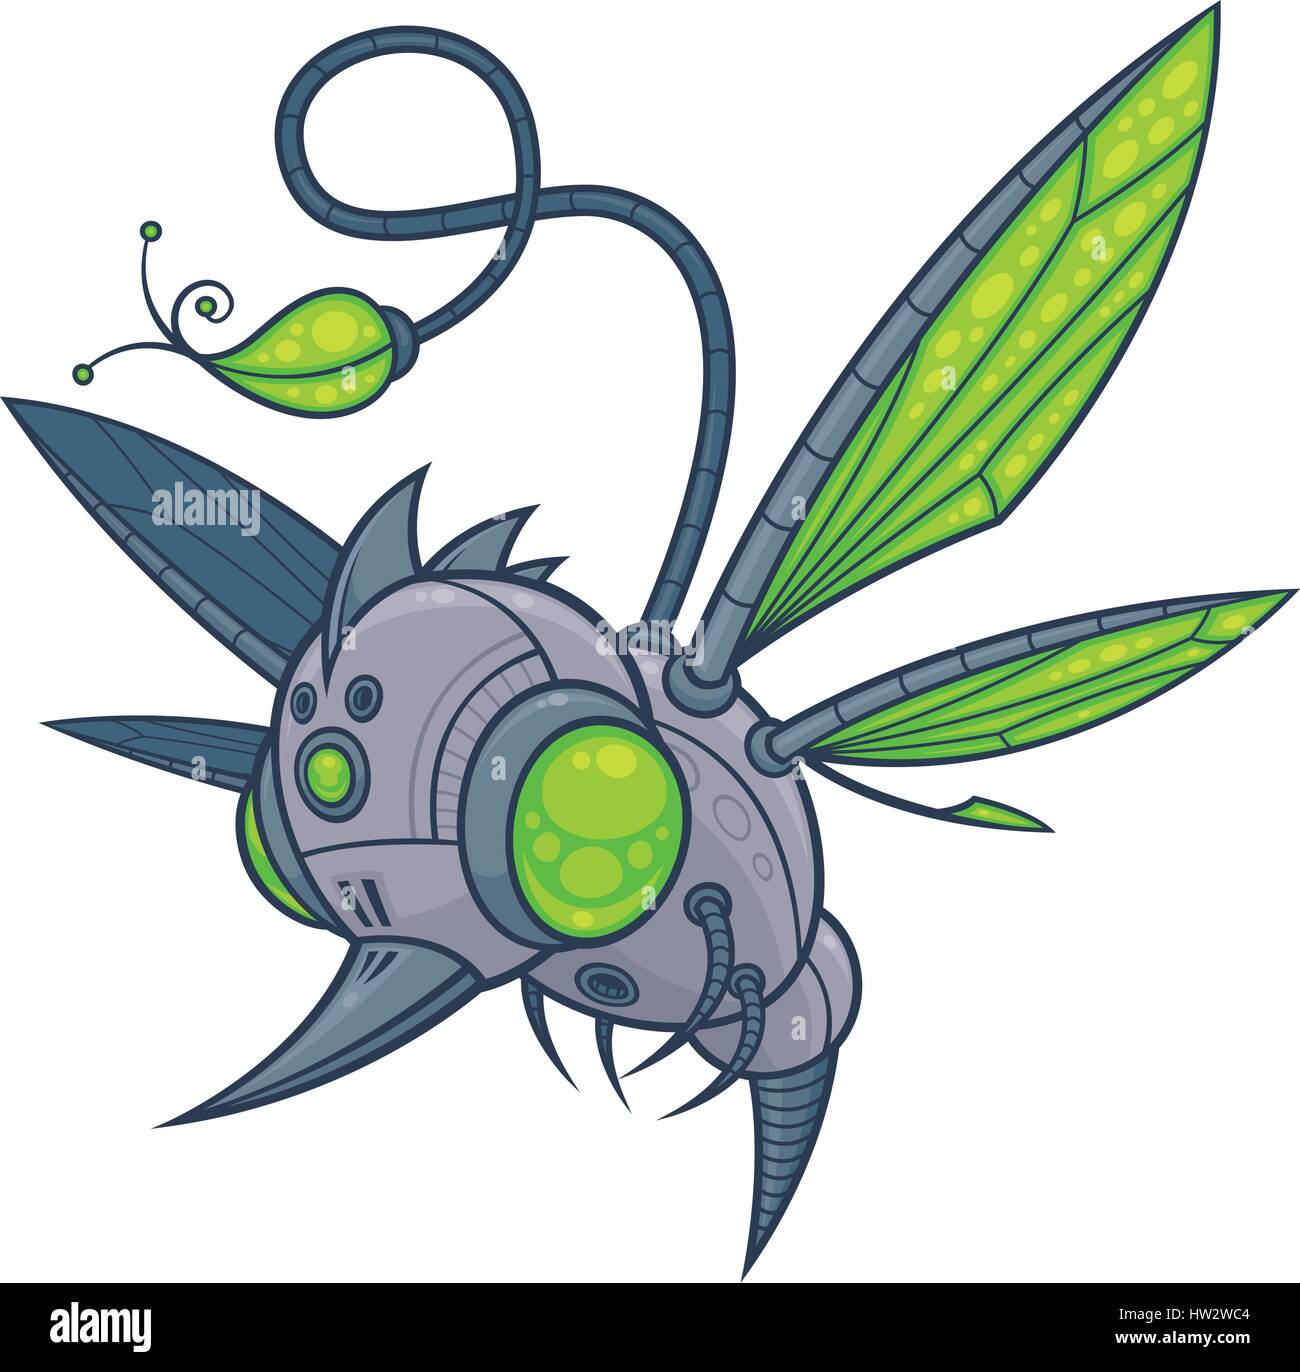 Vektor-Cartoon-Illustration einer fliegenden Roboter Drohne mit grünen Augen und Flügel. Stock Vektor